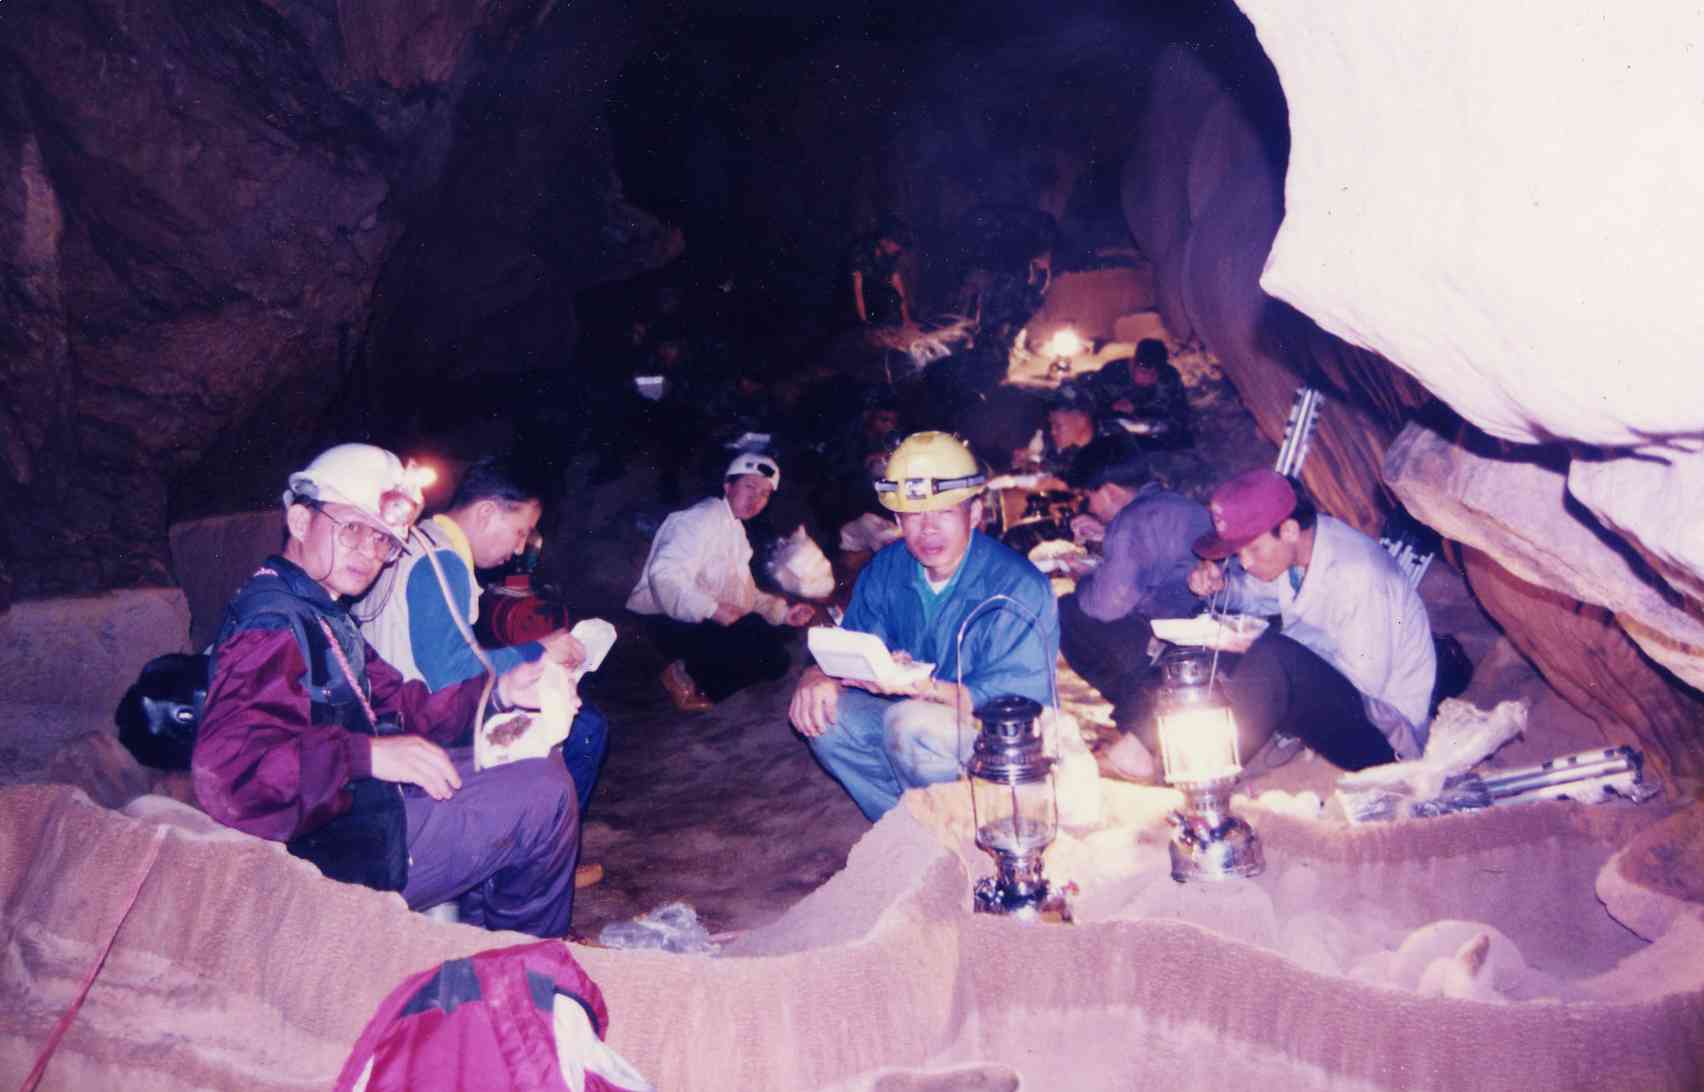 Cave Pha Mon exploration at Amphur Pang-Ma-Pha, Mae Hong Sorn Province, Thailand